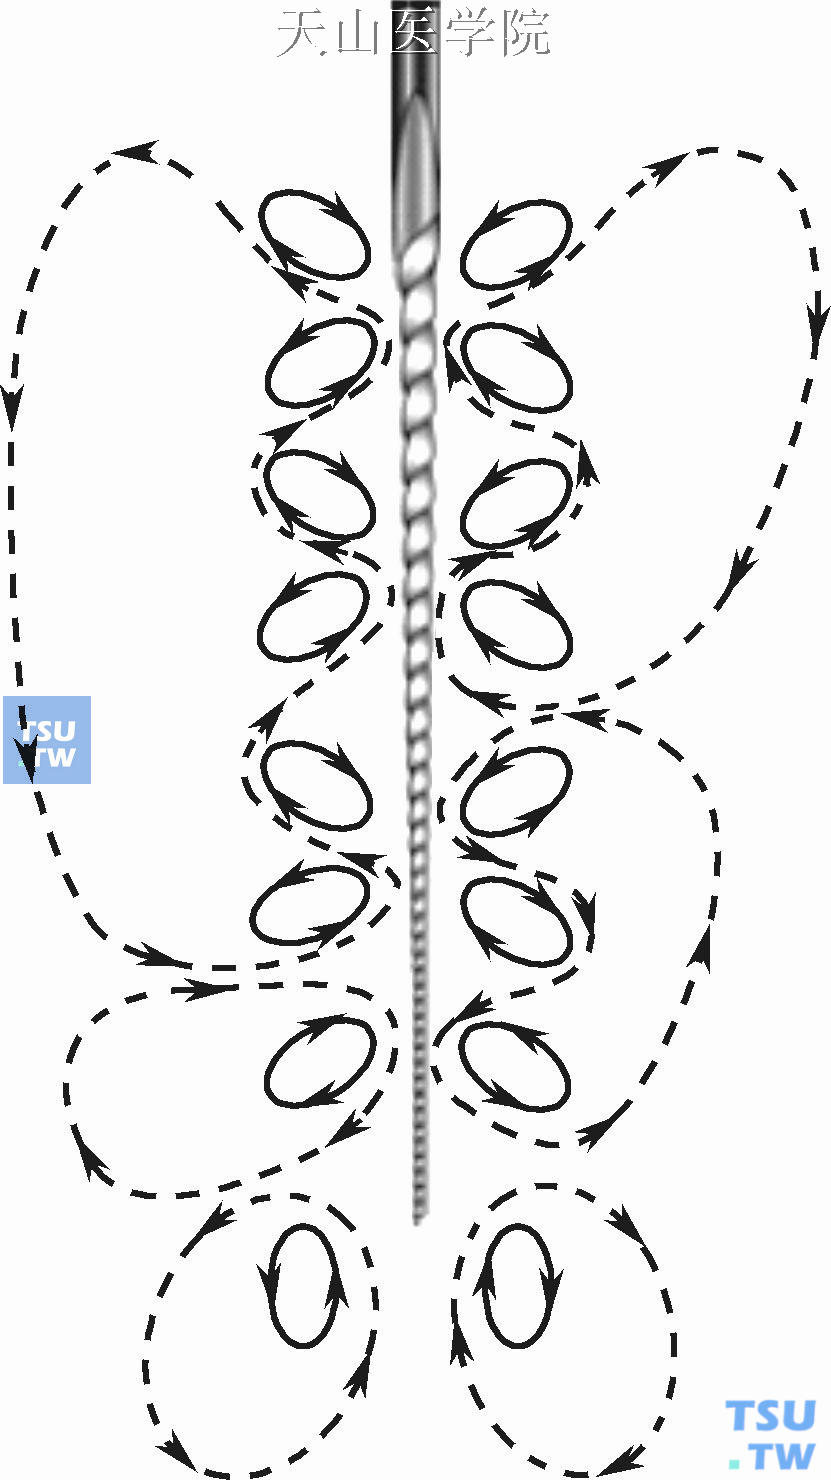 超声波对根管的清洁作用机制示意图